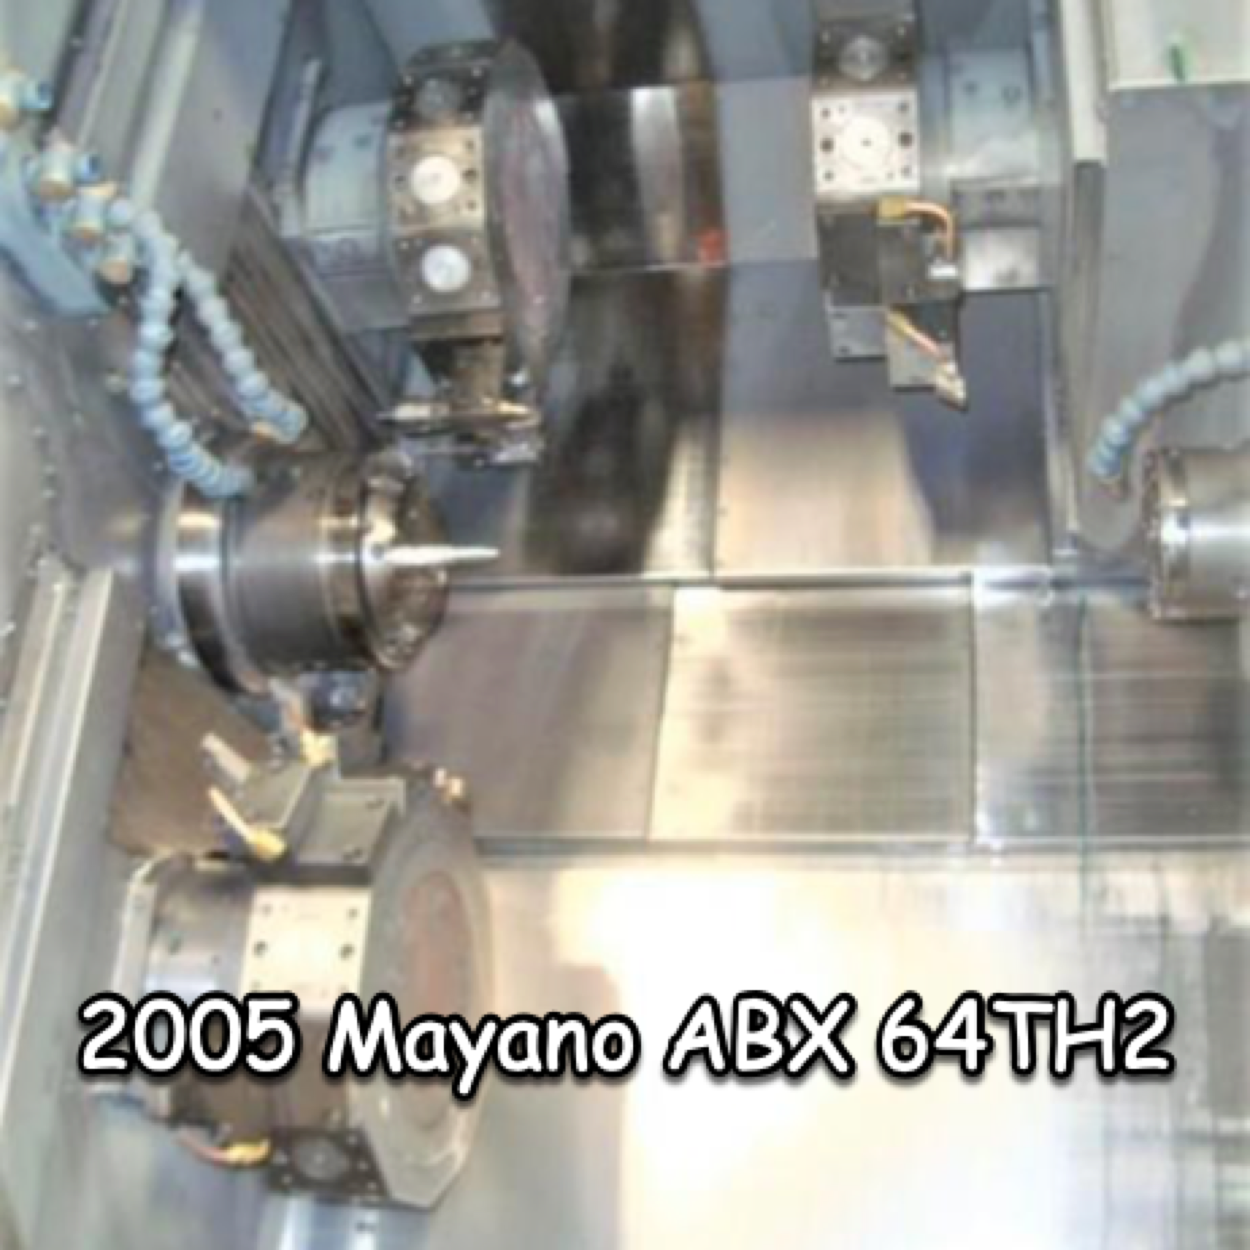 Miyanomatic ABX-64TH2 2005